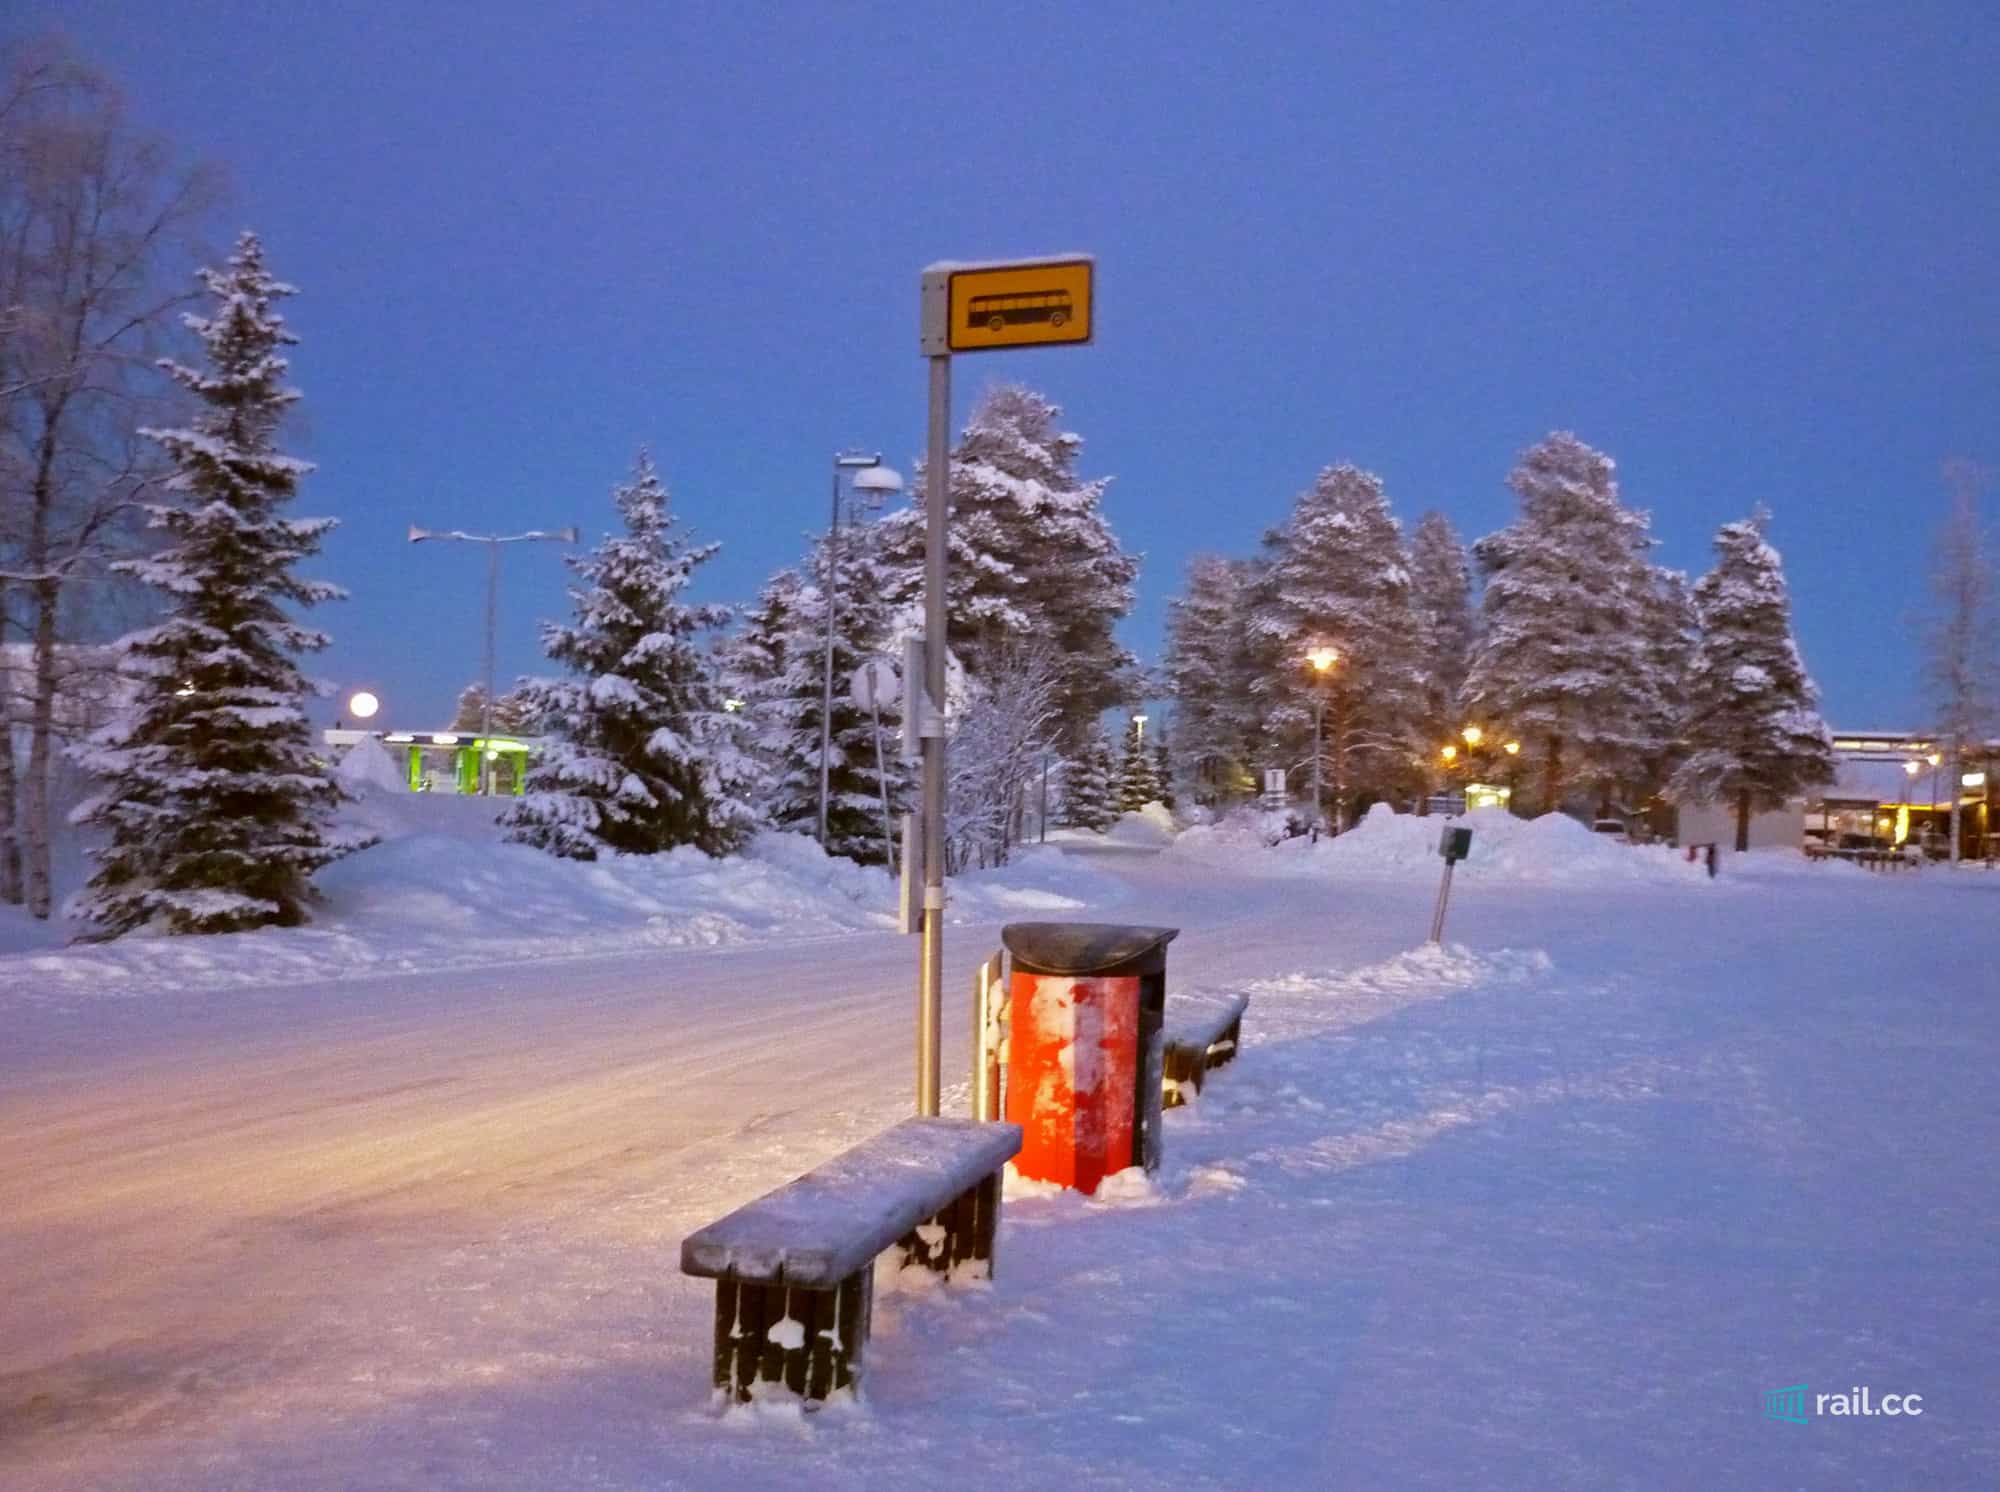 Arctic Circle bus stop at Santa Claus Village